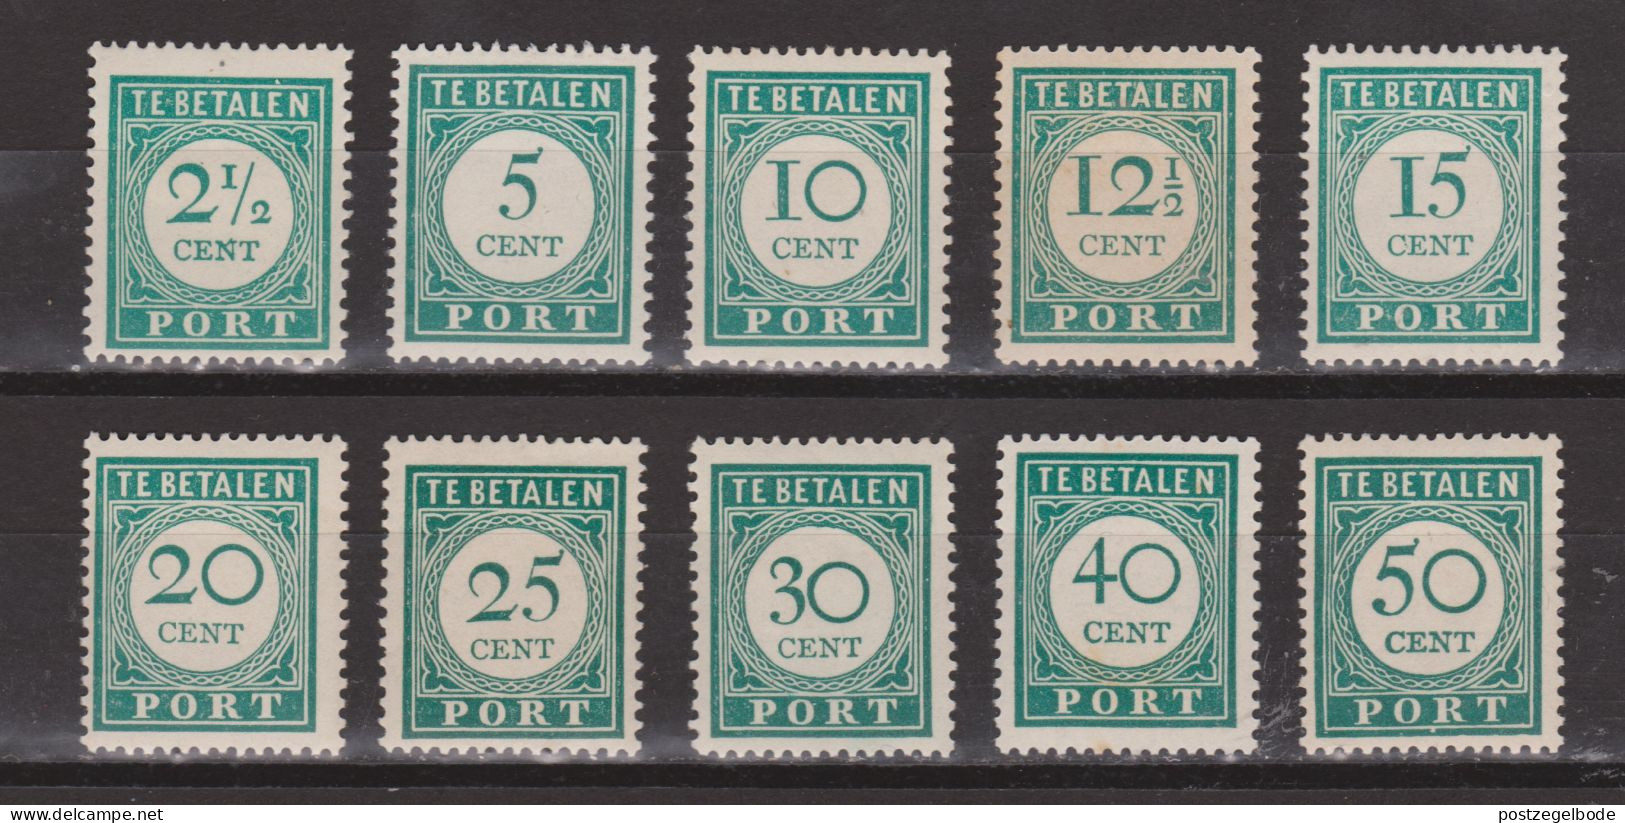 Curacao Port 34 35 36 37 38 39 40 41 42 43 MLH ;Port Postage Due Timbre-taxe Postmarke Sellos De Correos 1948 - Curaçao, Nederlandse Antillen, Aruba